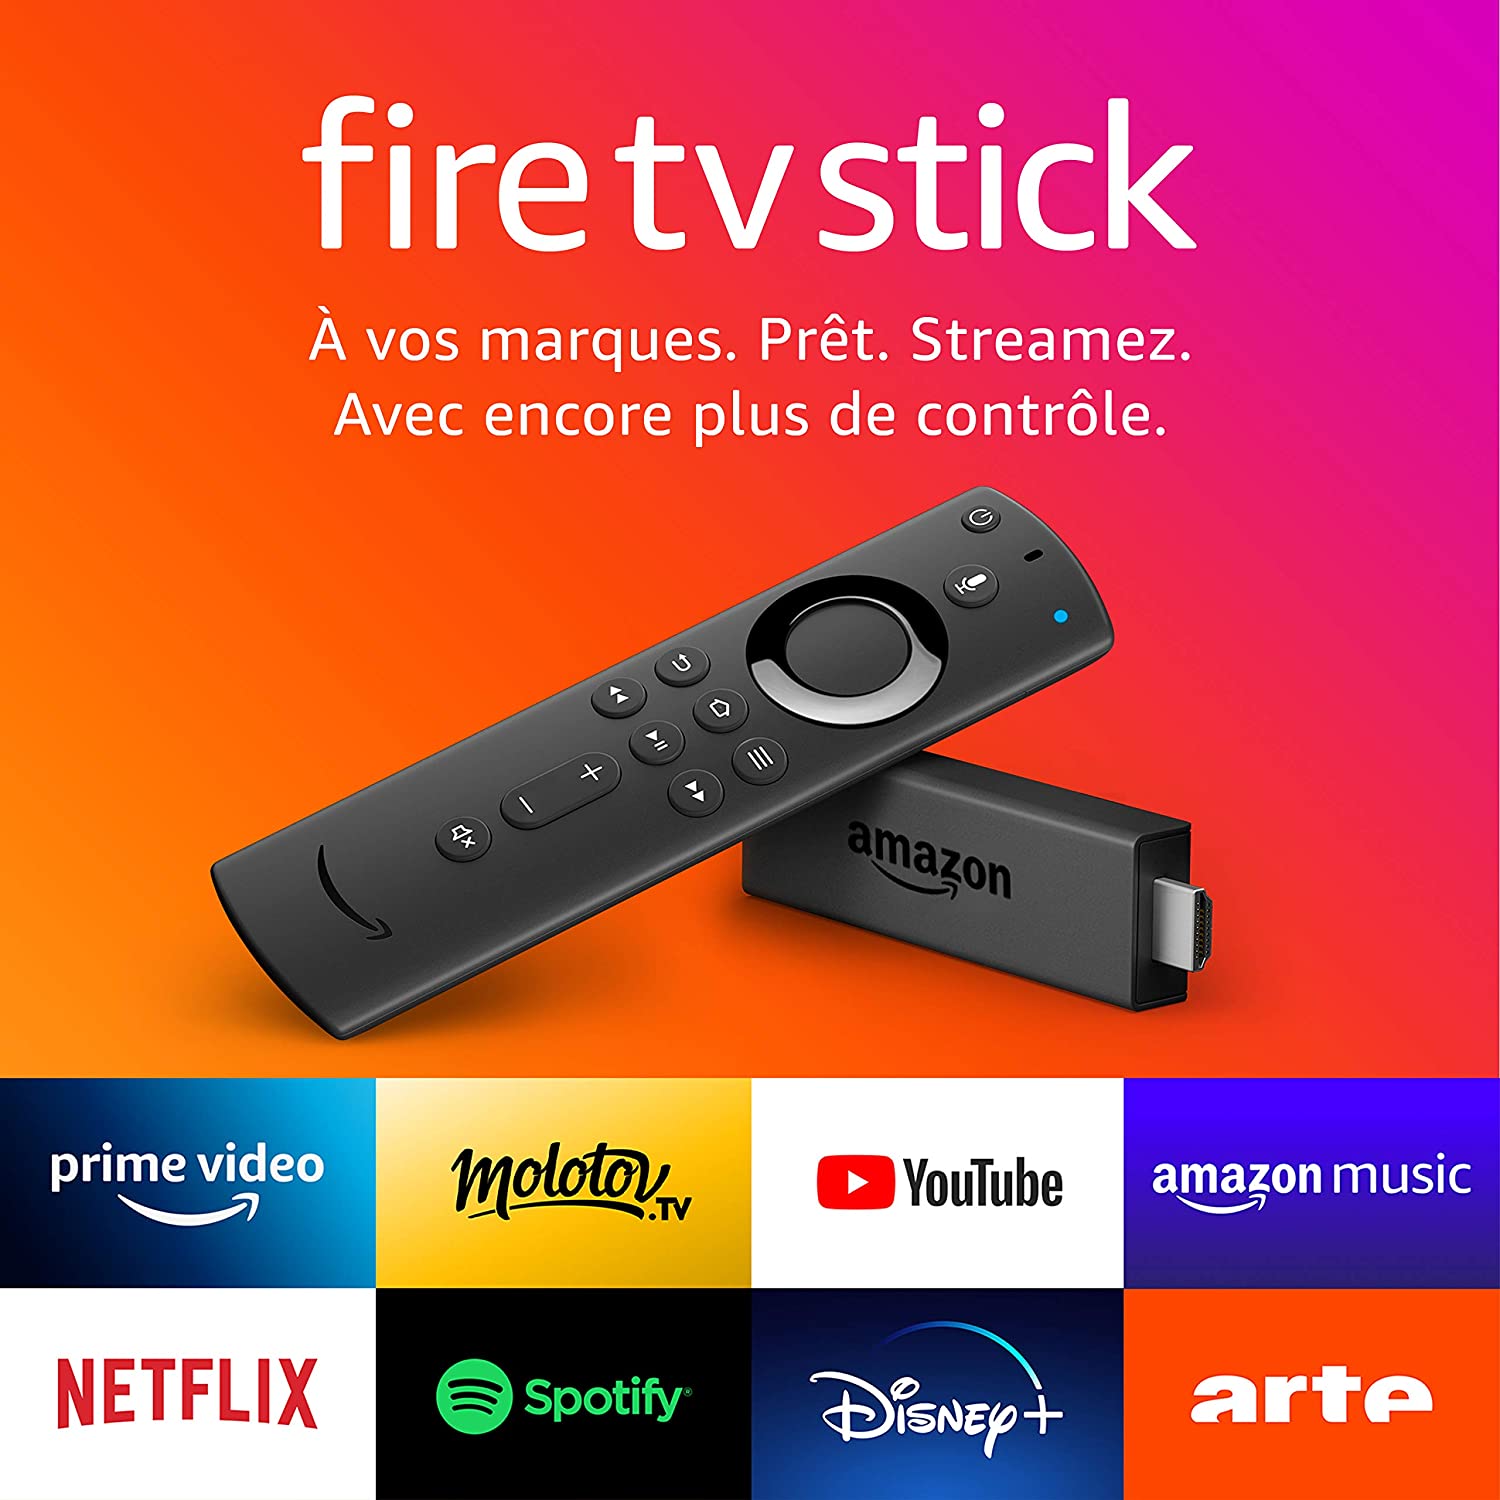 Les nouveaux Fire TV Sticks 4K sont disponibles en France – Les